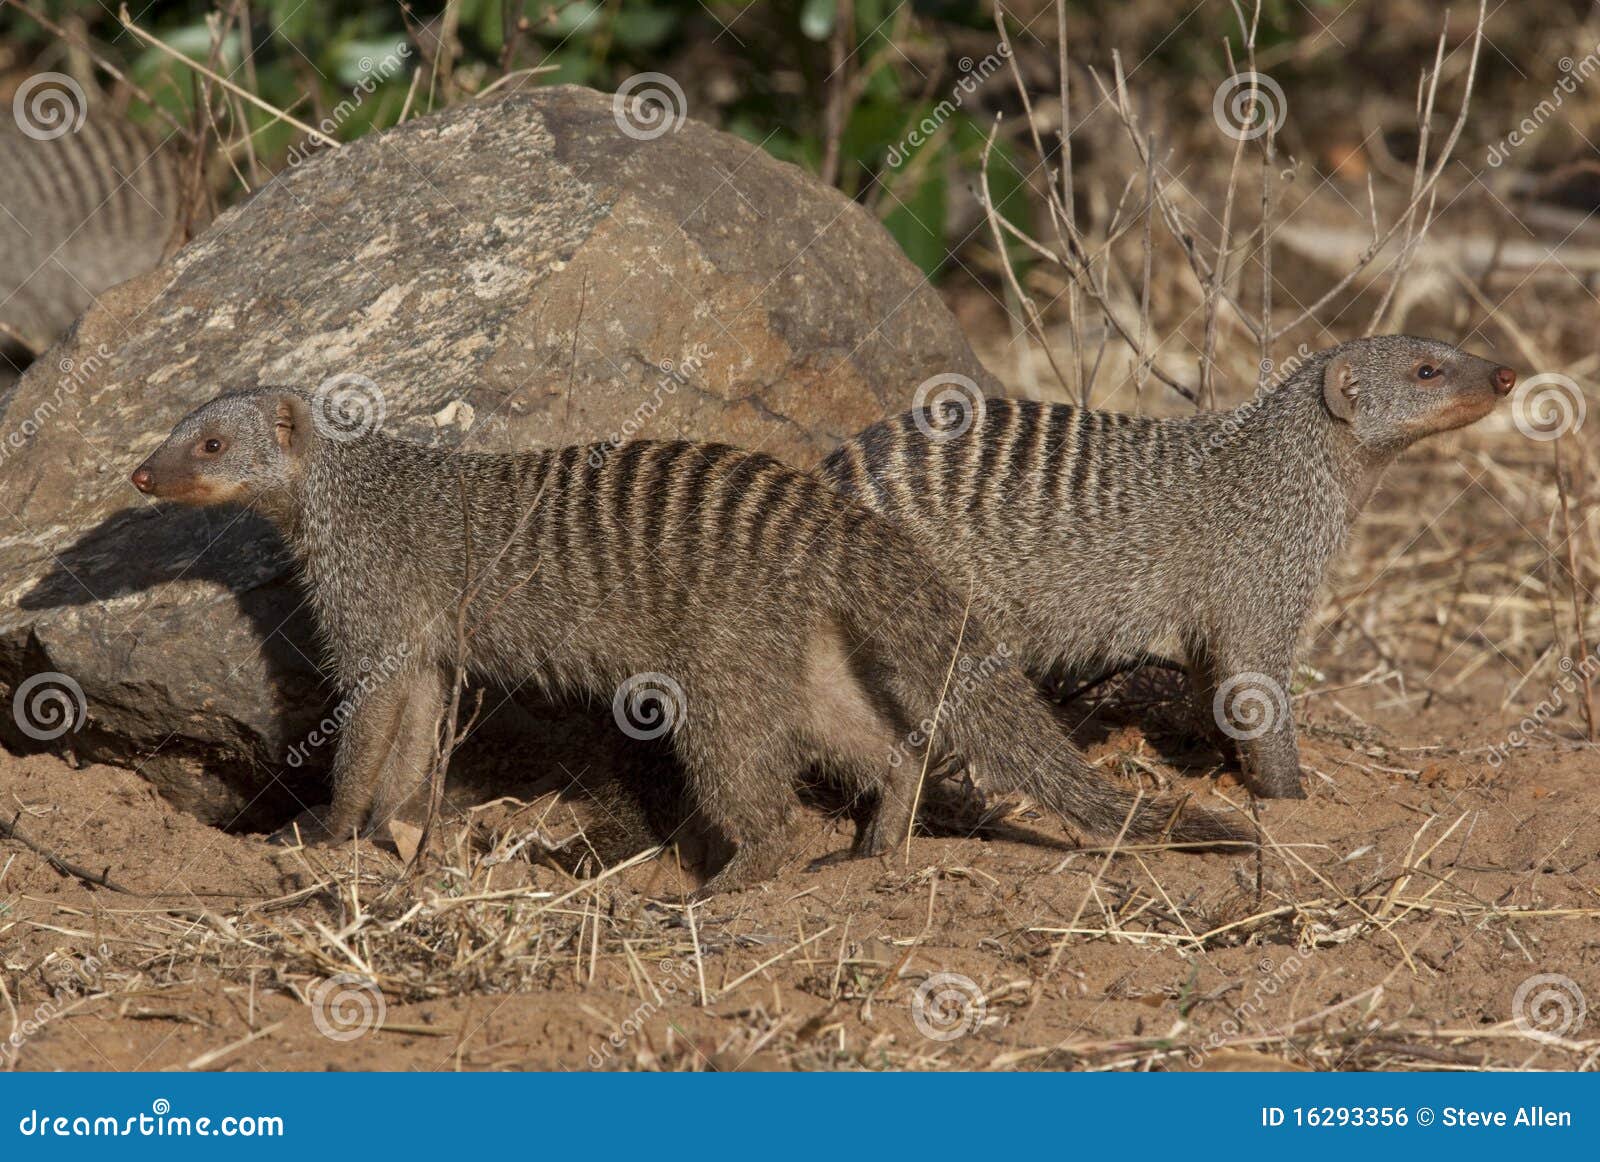 banded mongoose - botswana